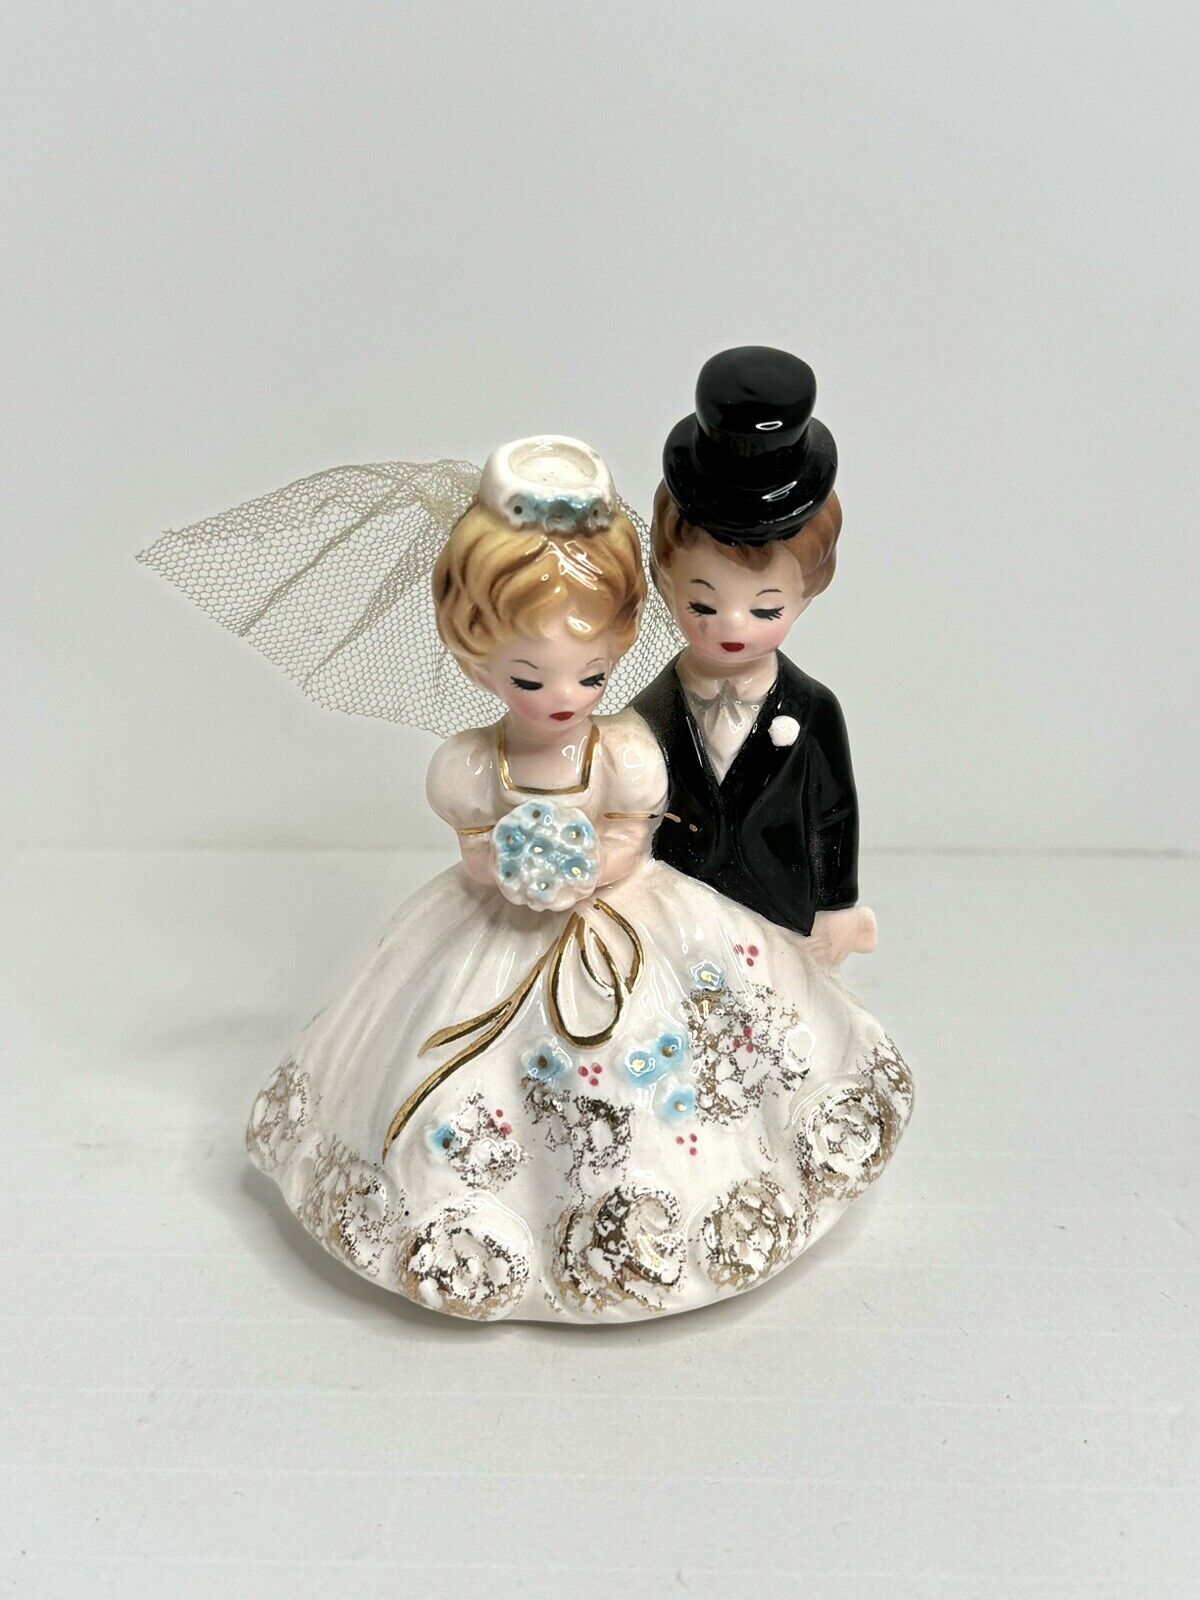 Vintage Josef Originals Figurine Bride & Groom Wedding Cake Topper Porcelain